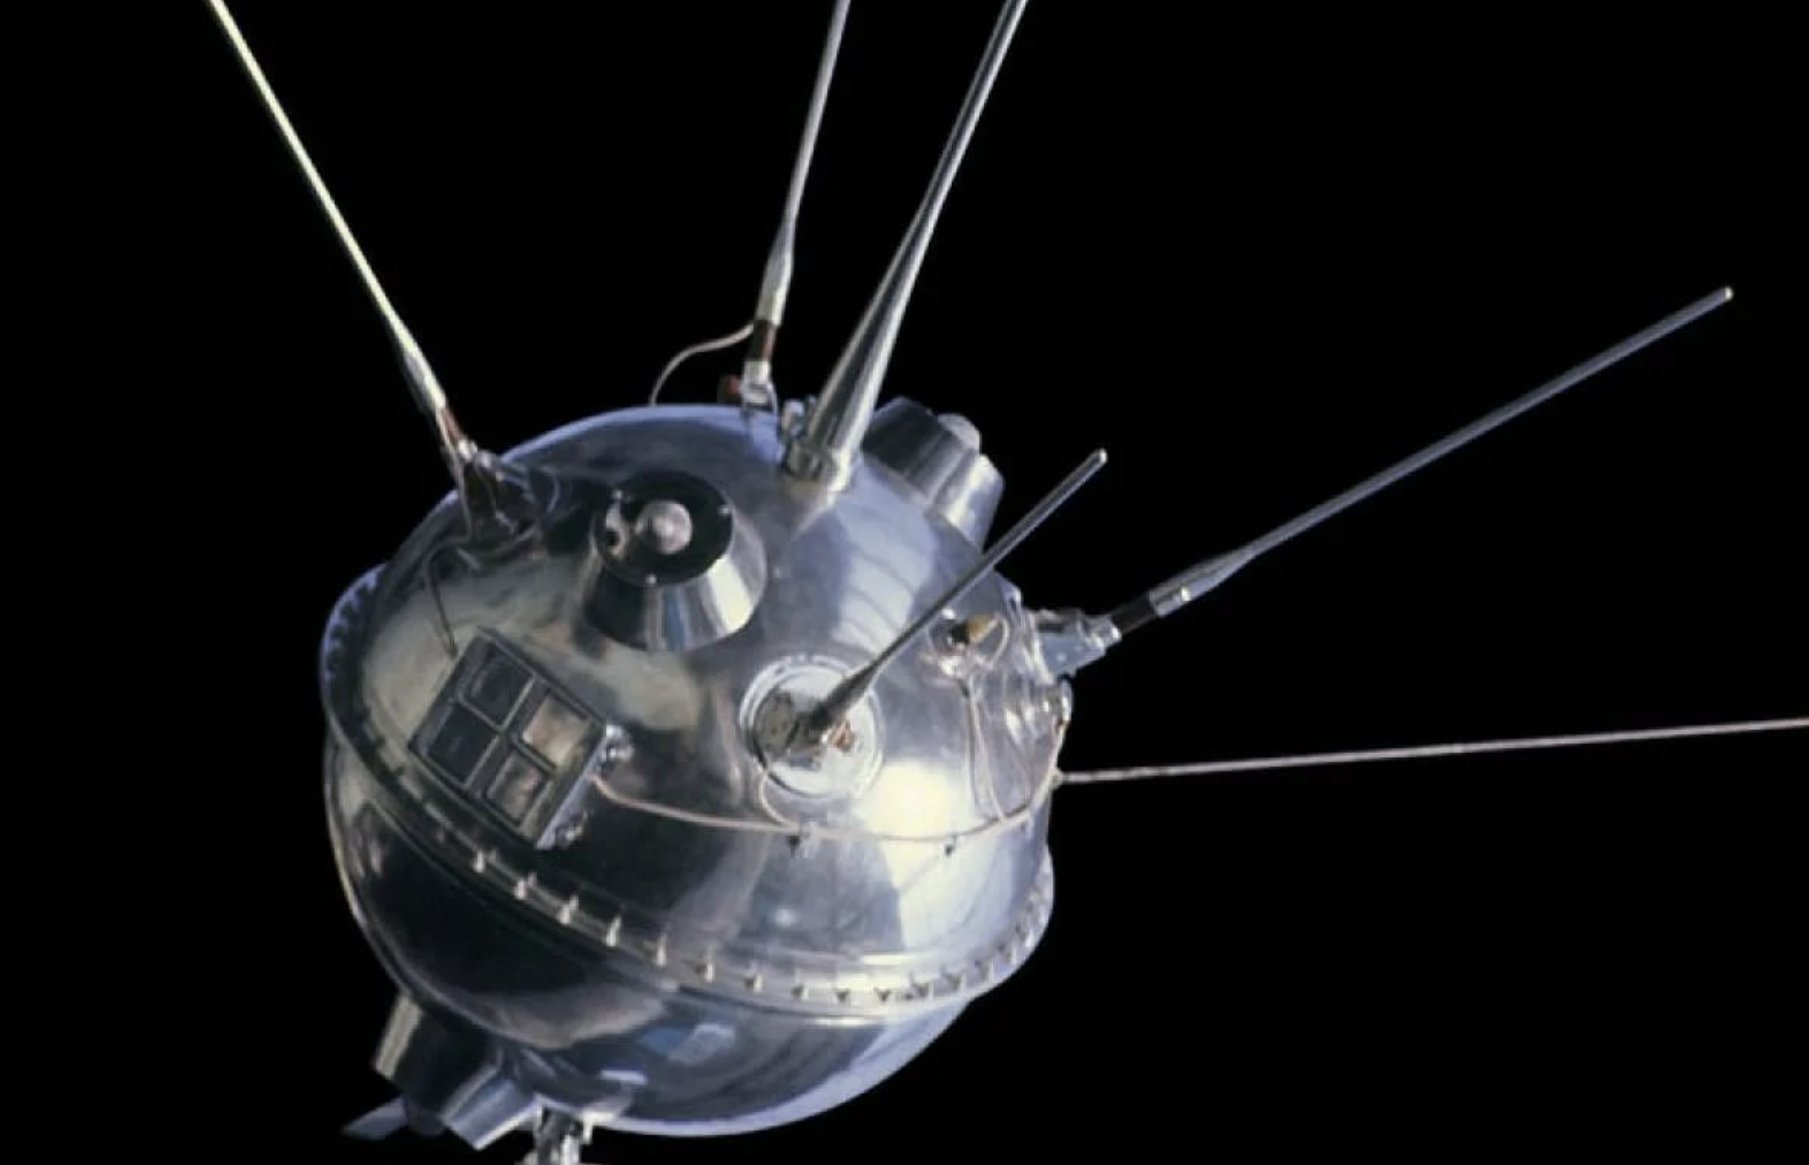 Первого спутника 15. Луна-1 автоматическая межпланетная станция. Луна-2 автоматическая межпланетная станция. Советская станция Луна 1. Автоматическая межпланетная станция «Луна-17», в СССР.